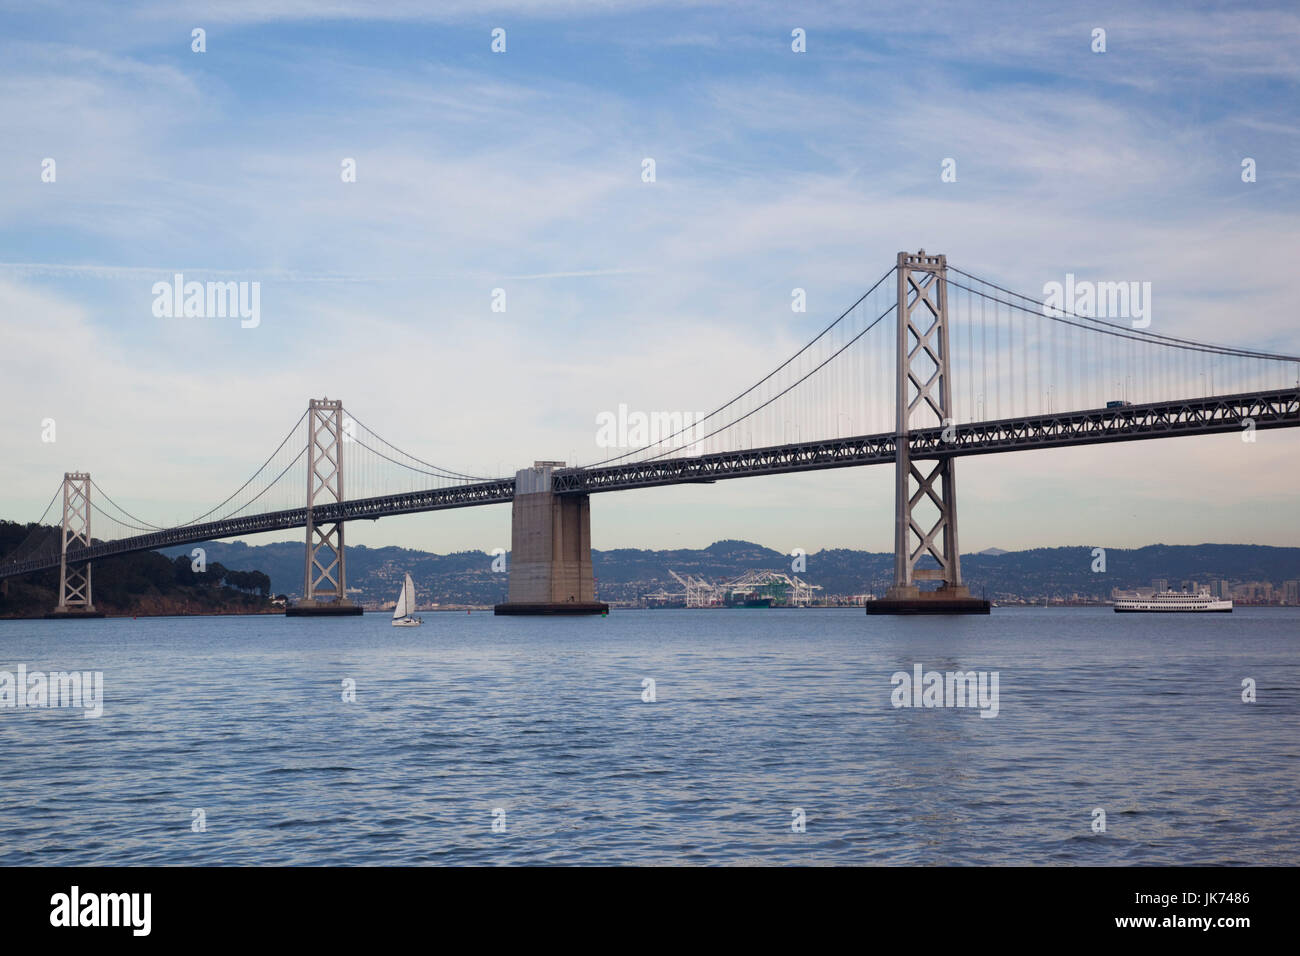 USA, California, San Francisco, Embarcadero, Bay Bridge, late afternoon Stock Photo